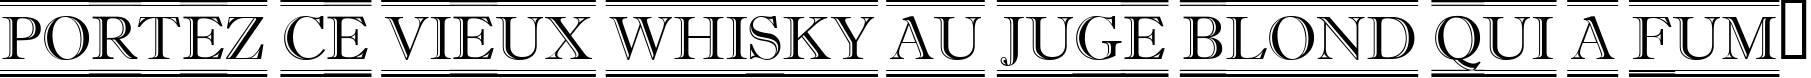 Пример написания шрифтом a_AntiqueTitulDcFr текста на французском